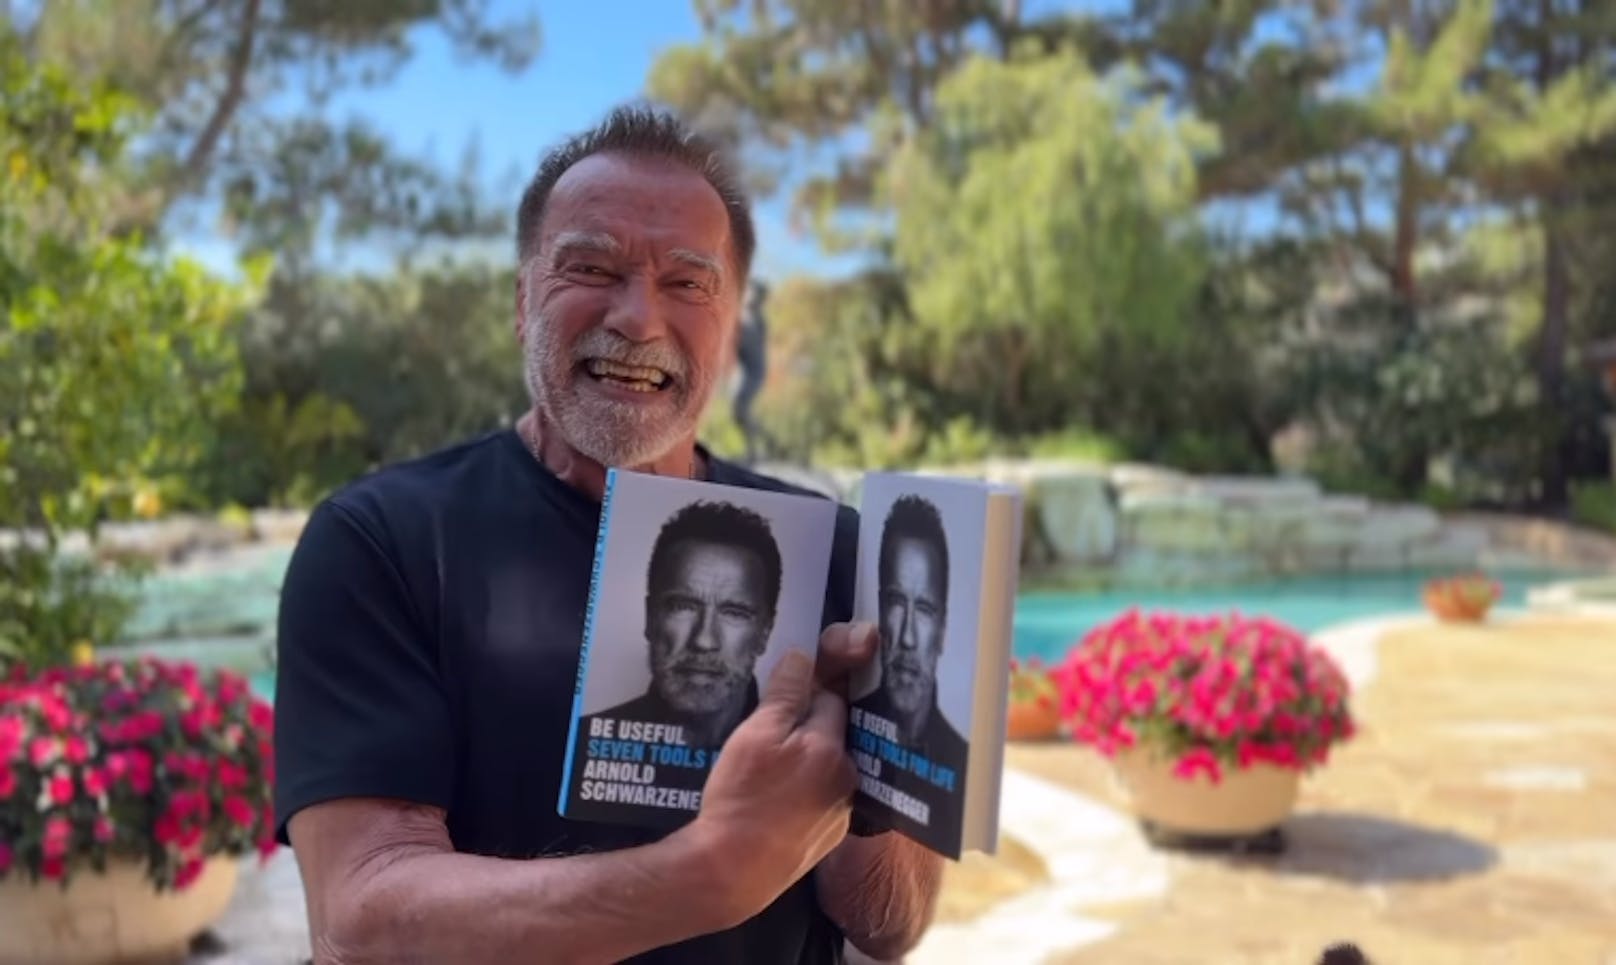 Stolz hält Arnie sein Werk "Be Useful - Sieben einfache Regeln für ein besseres Leben" in den Händen.